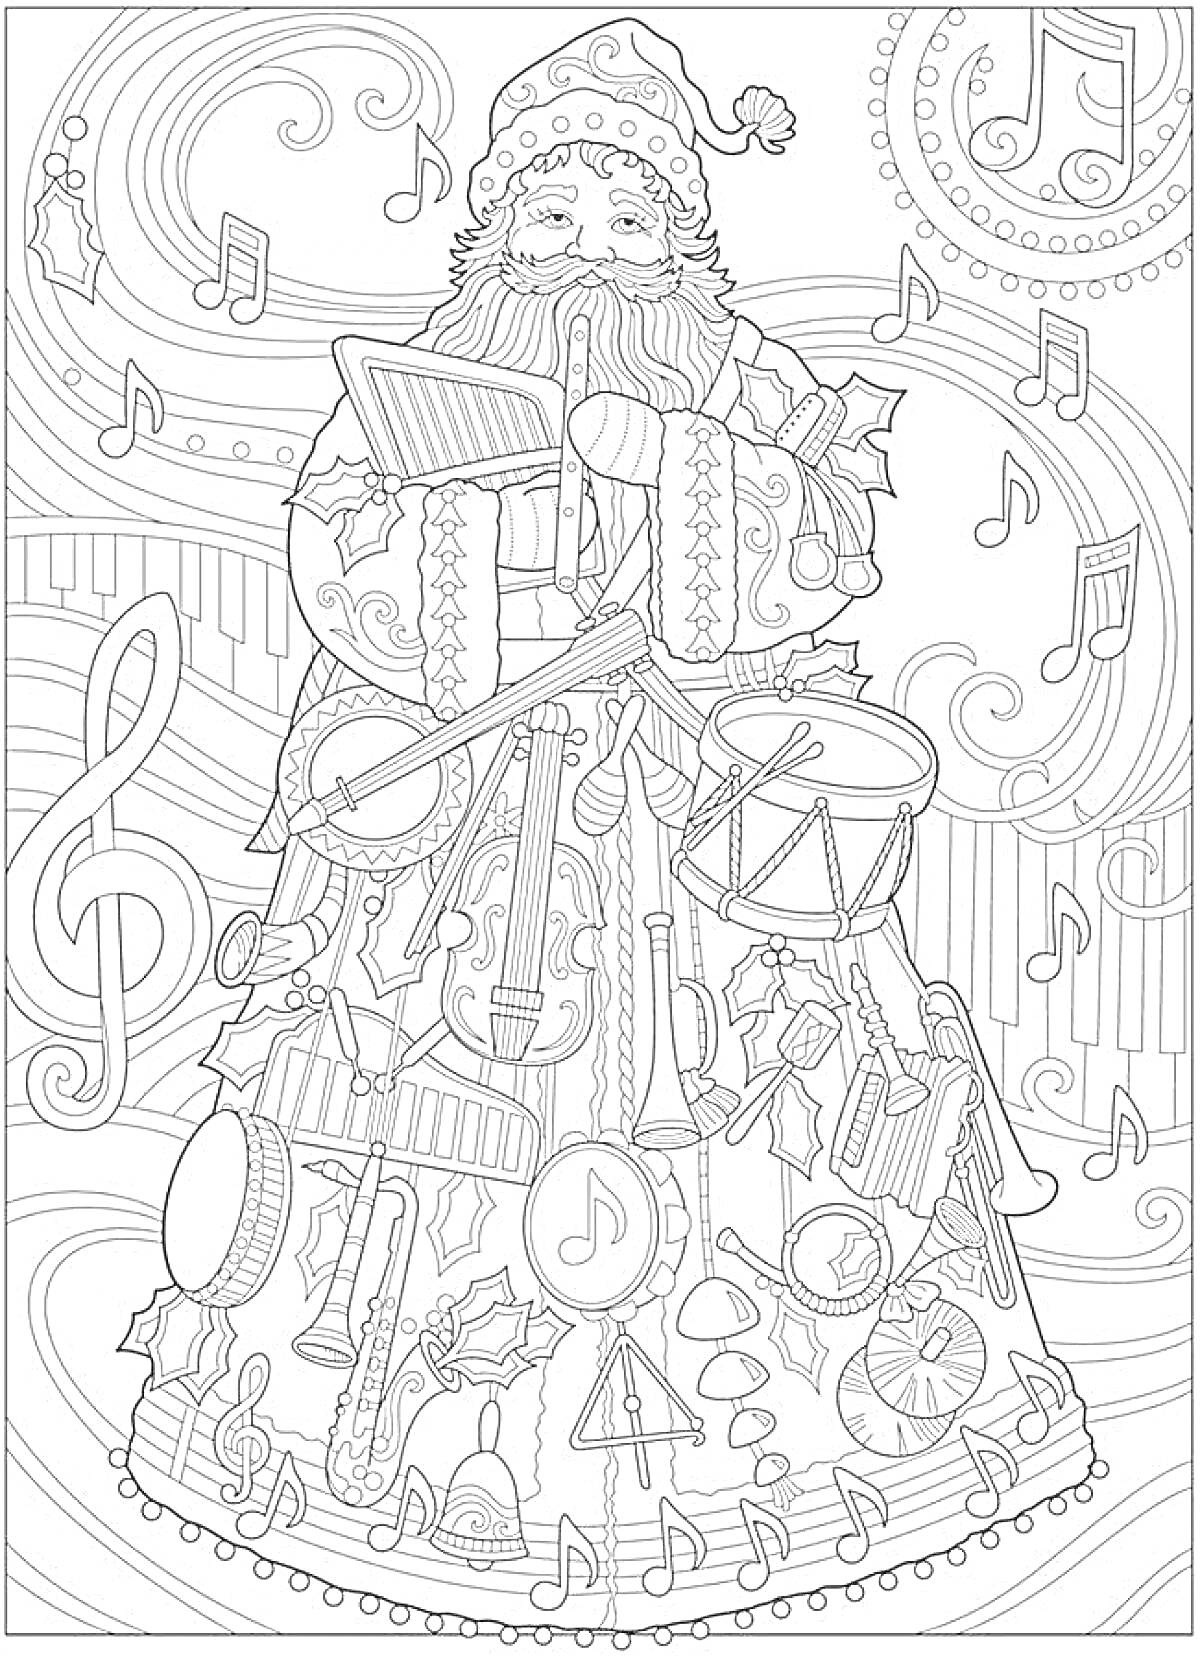 Дед Мороз с барабаном, украшенный музыкальными инструментами на фоне нот и музыкальных символов.